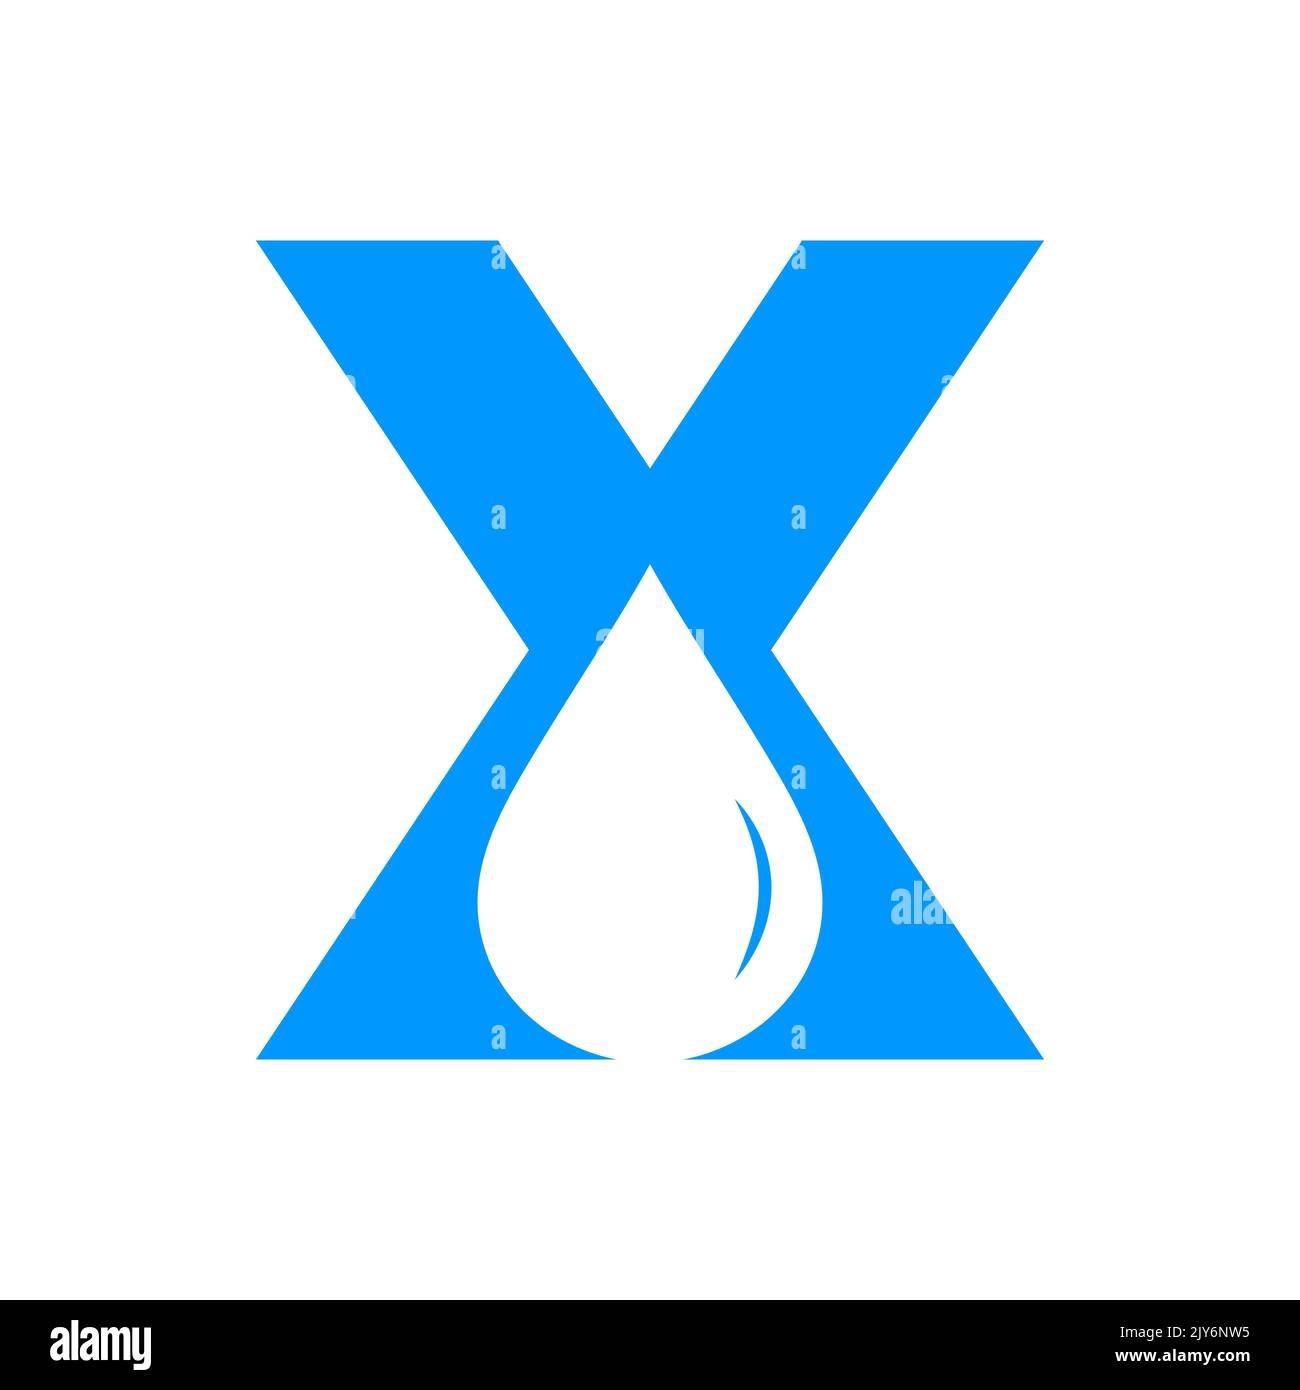 Vektor-Vorlage für Wasserlogo mit dem Buchstaben X. Wassertropfen-Logo Stock Vektor